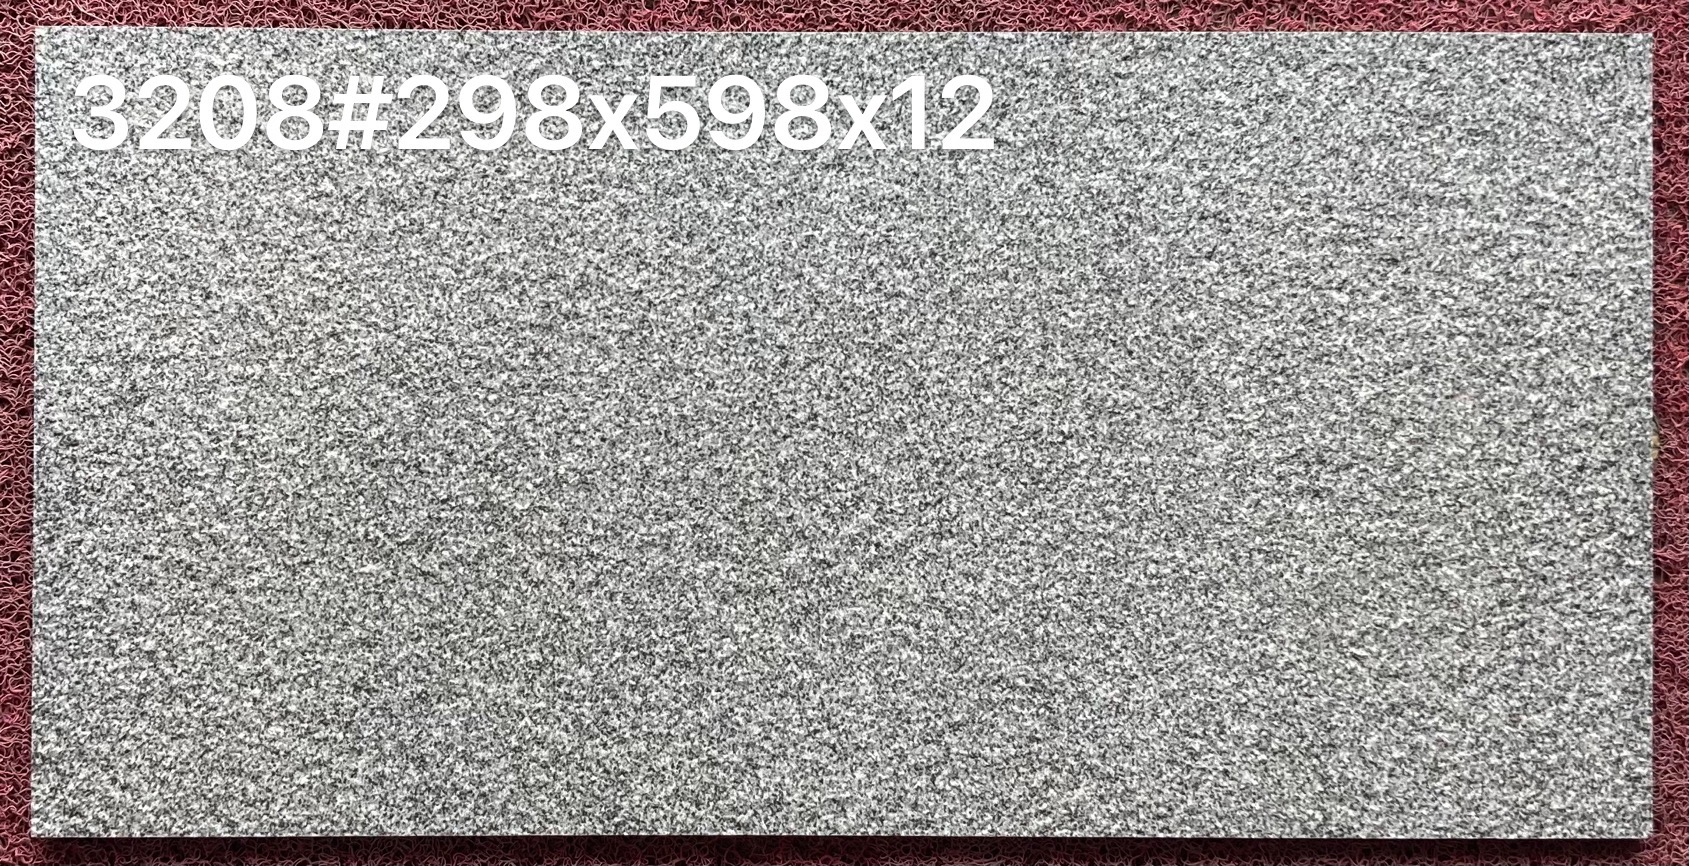 Rectangular Ecological Paving Stone Series - Sesame Light Gray Style Floor Tiles